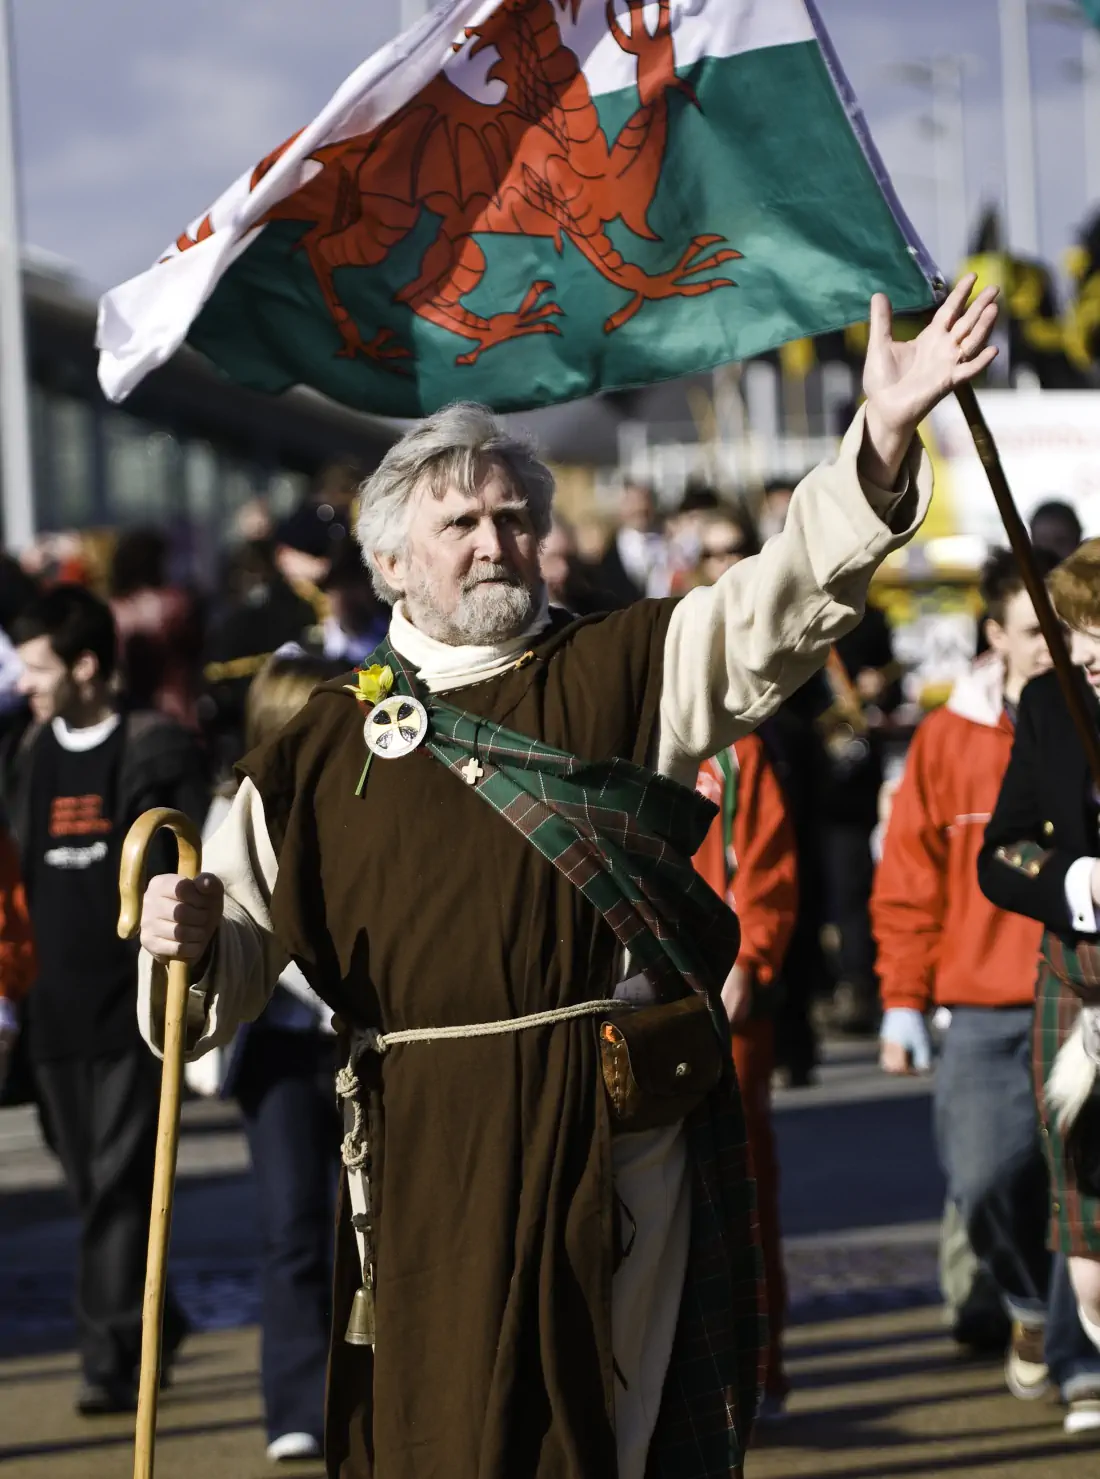 St David's Day Parade, Wales